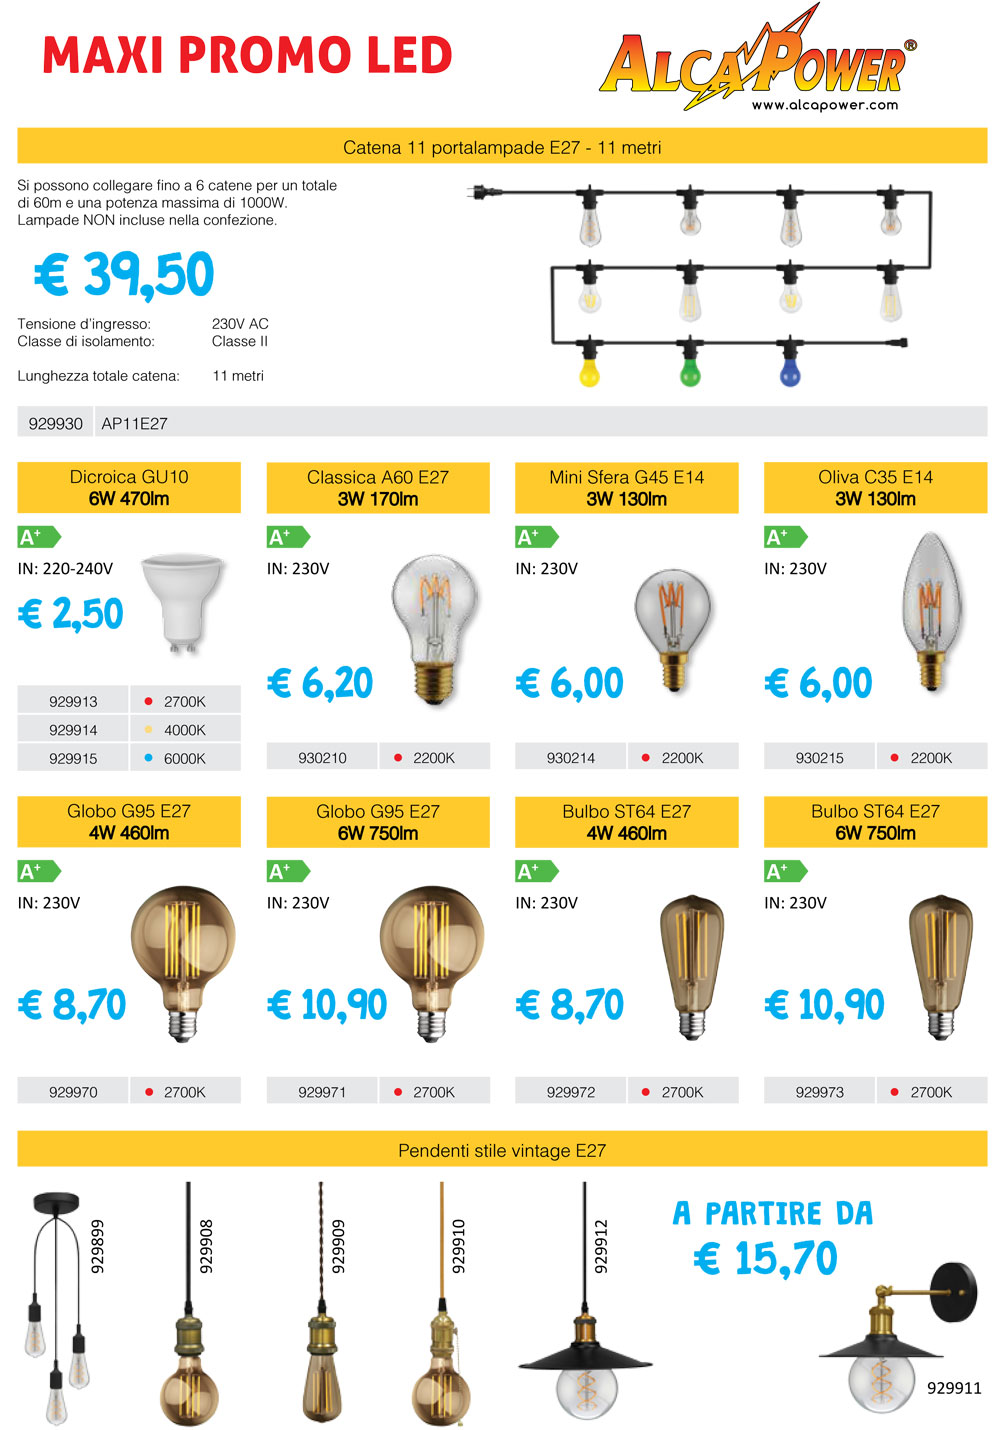 Electronic Megastore |  Non perdere l'occasione prodotti LED alta qualità Alcapower garanzia italiana Contattati per qualsiasi info promo LED